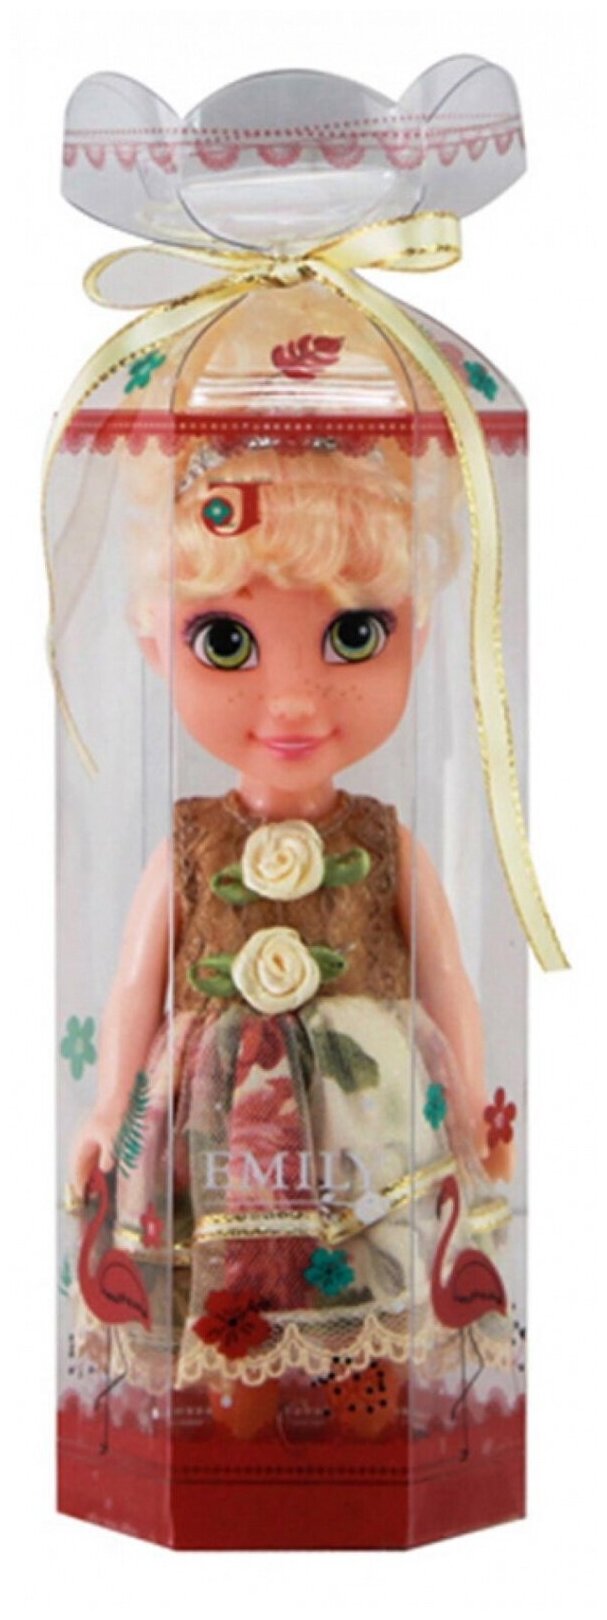 Кукла ABtoys Emily мини в прозрачной коробочке (блондинка, двухцветное платье), 16,5см QJ086D